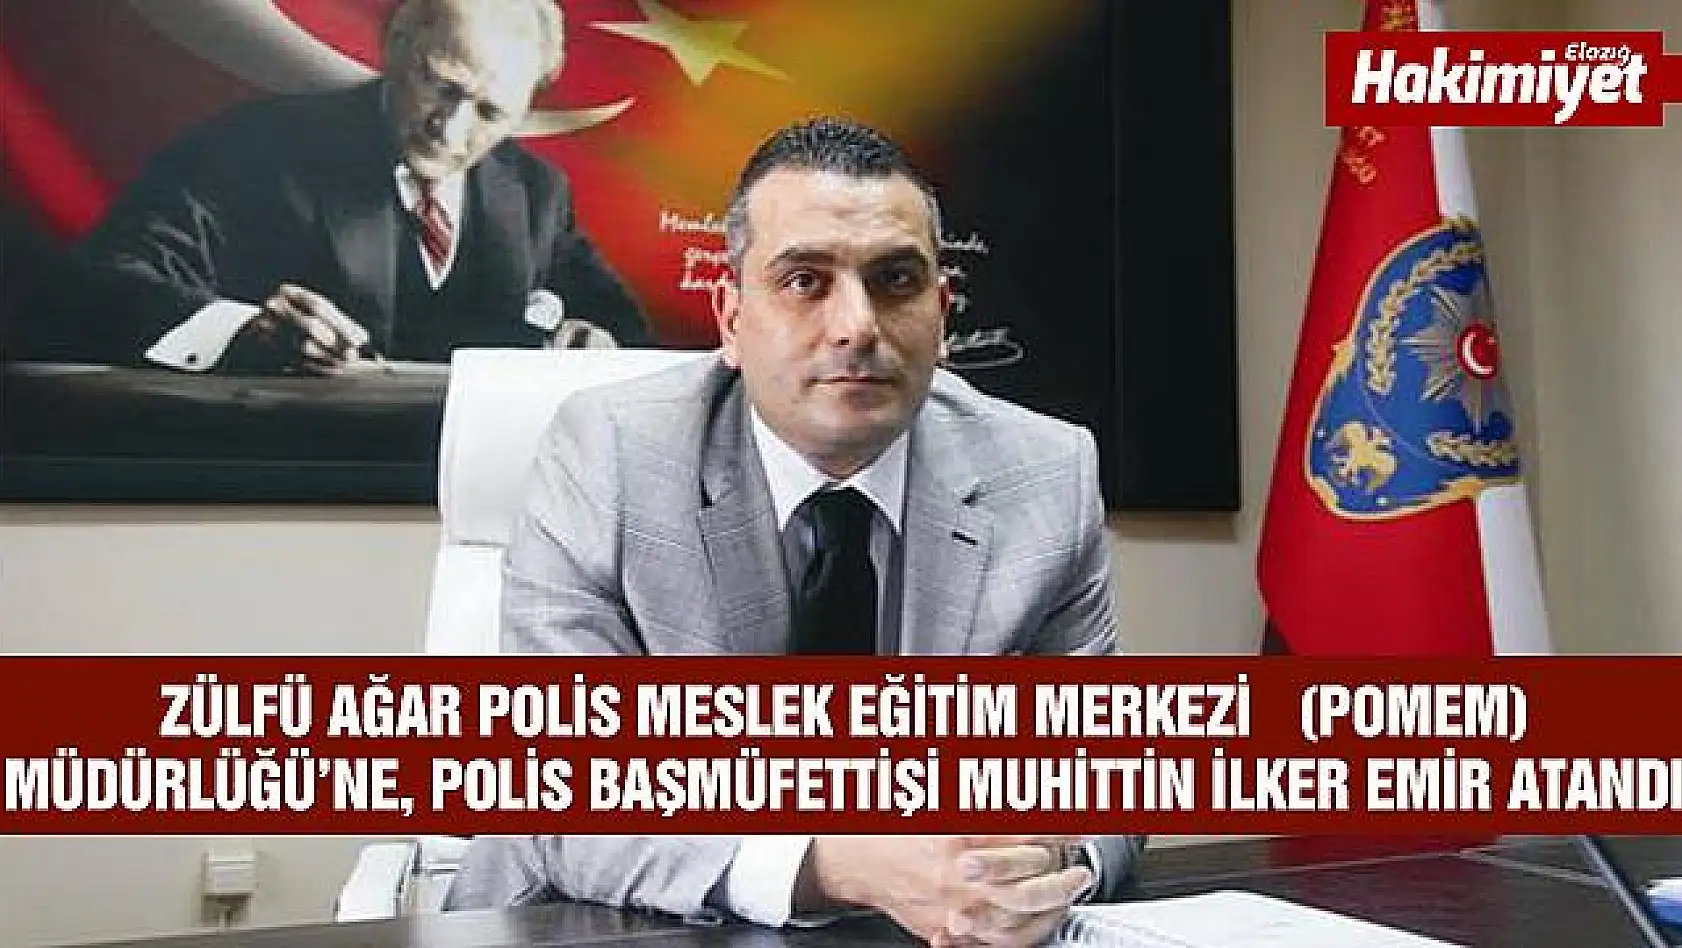 Elazığ Zülfü Ağar Polis Meslek Eğitim Merkezi Müdürlüğü'ne Muhittin İlker Emir atandı